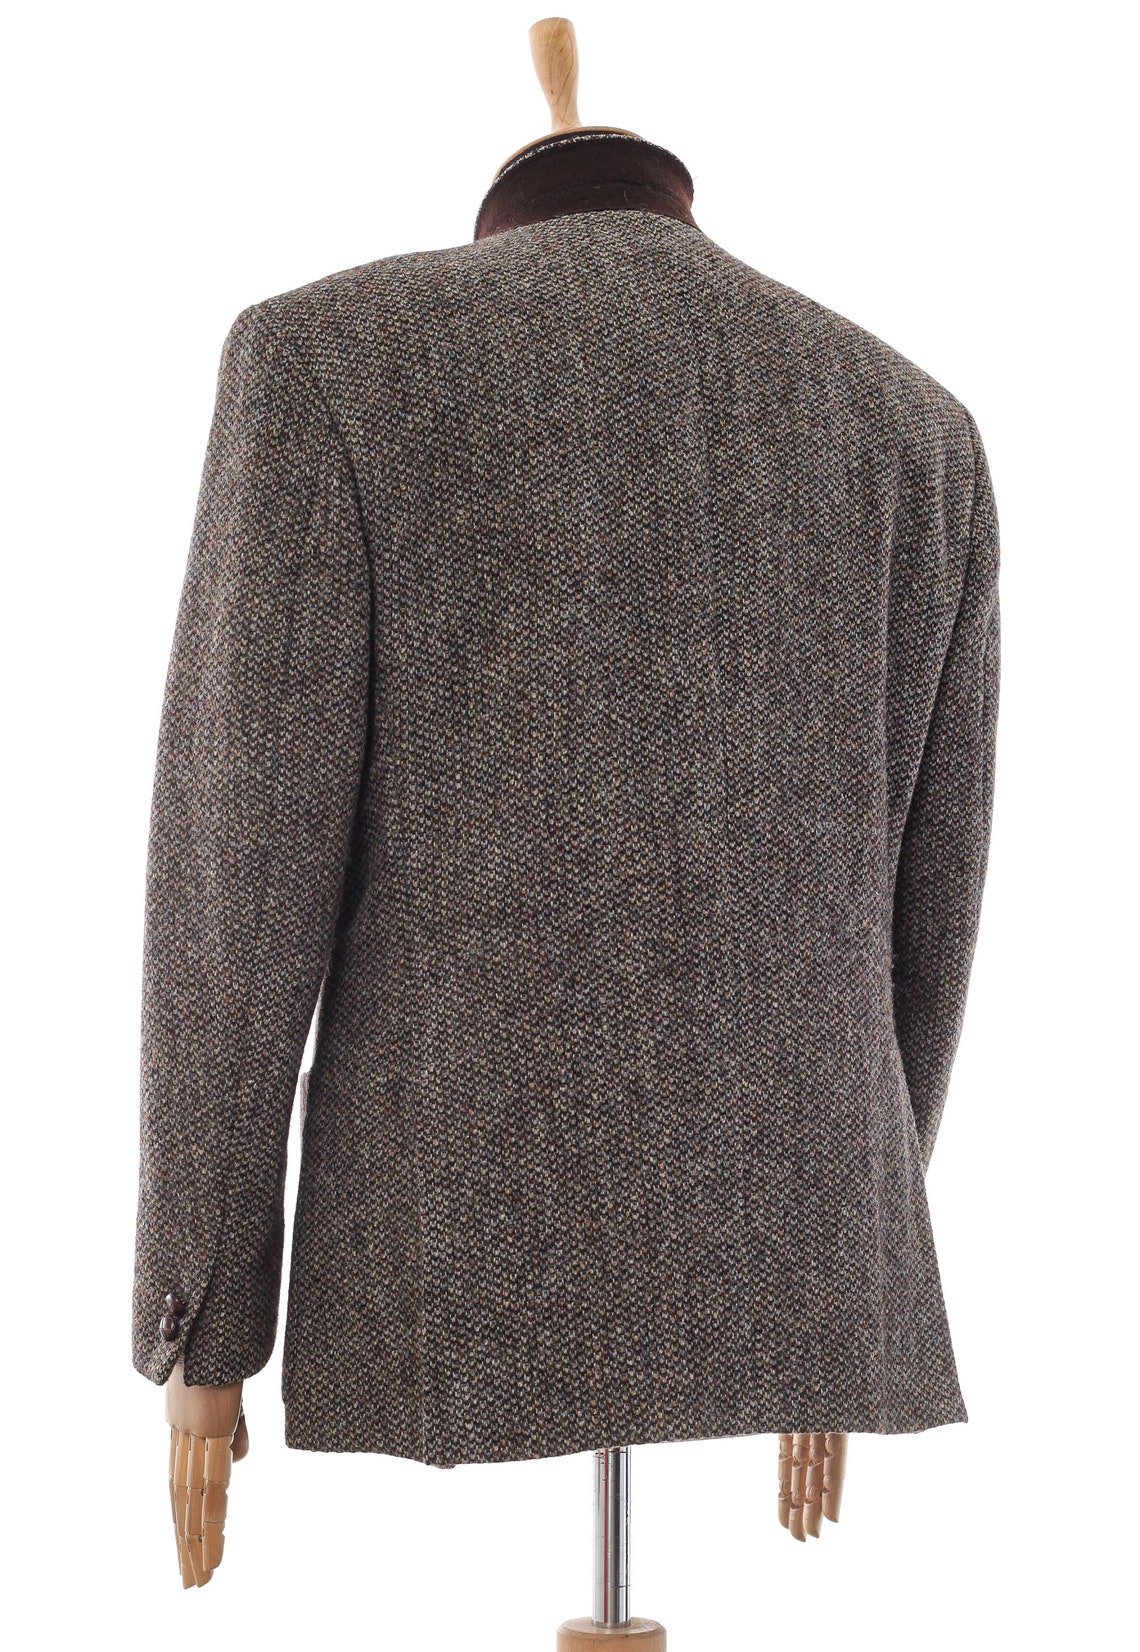 Mens HARRIS TWEED Blazer Coat Jacket Wool Herringbone Brown | Etsy